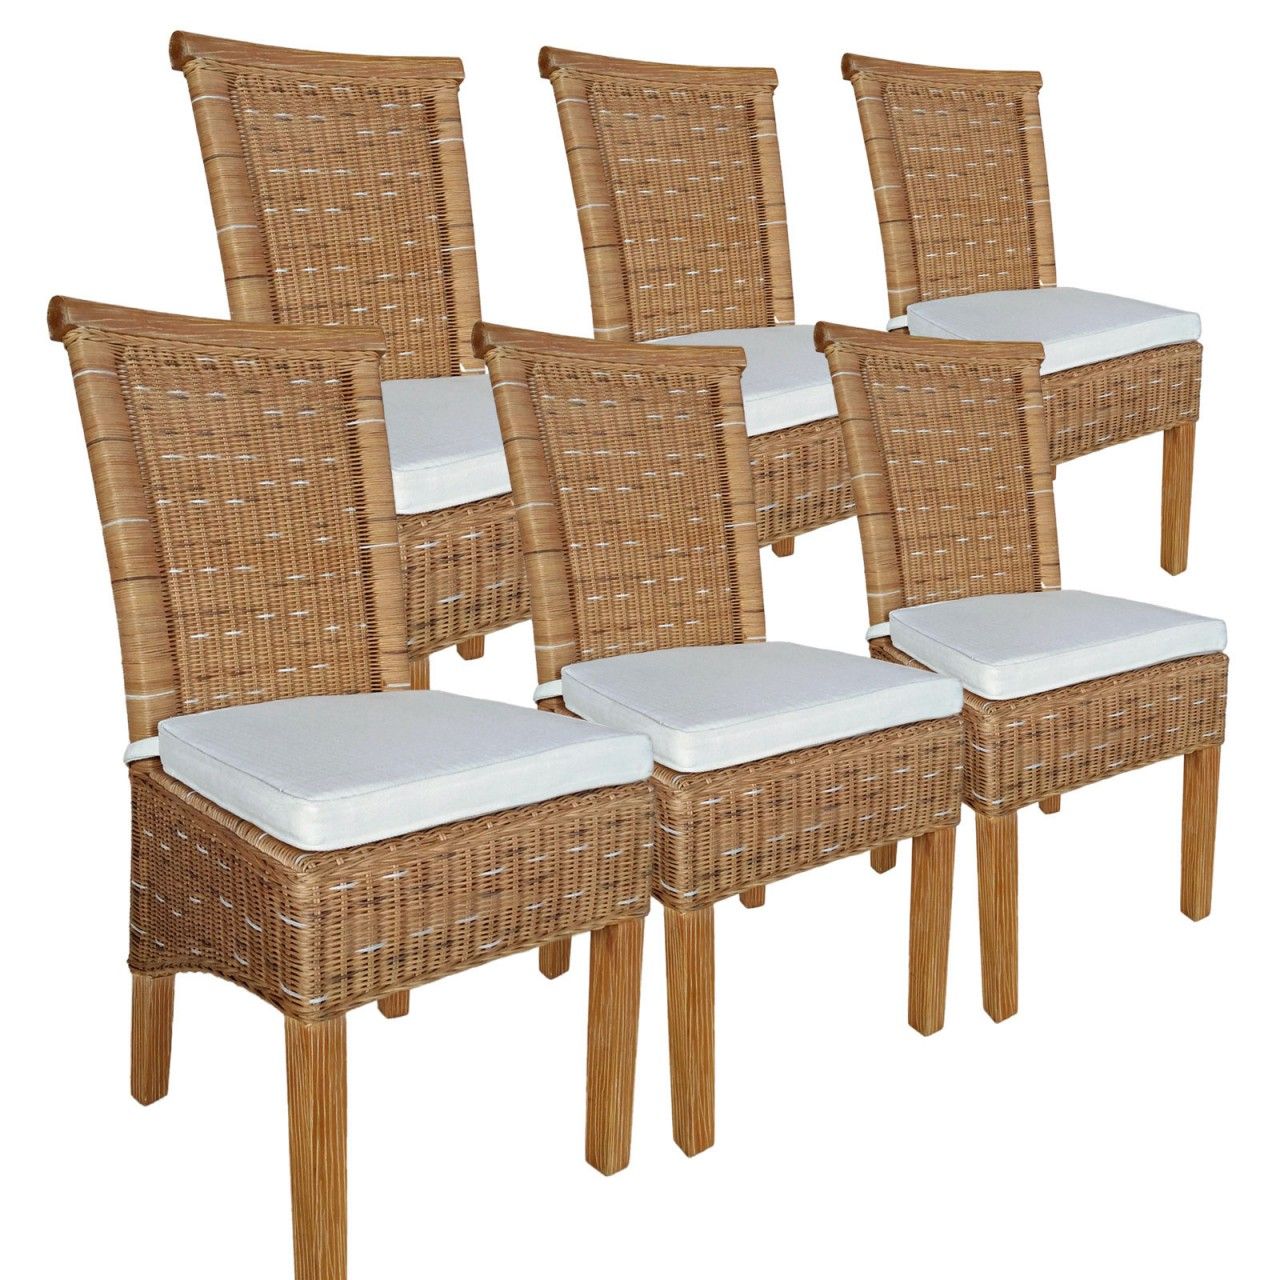 Esszimmer Stühle Set 6 Stück Rattanstühle Esstisch Stühle Perth braun Korbstühle mit Sitzkissen